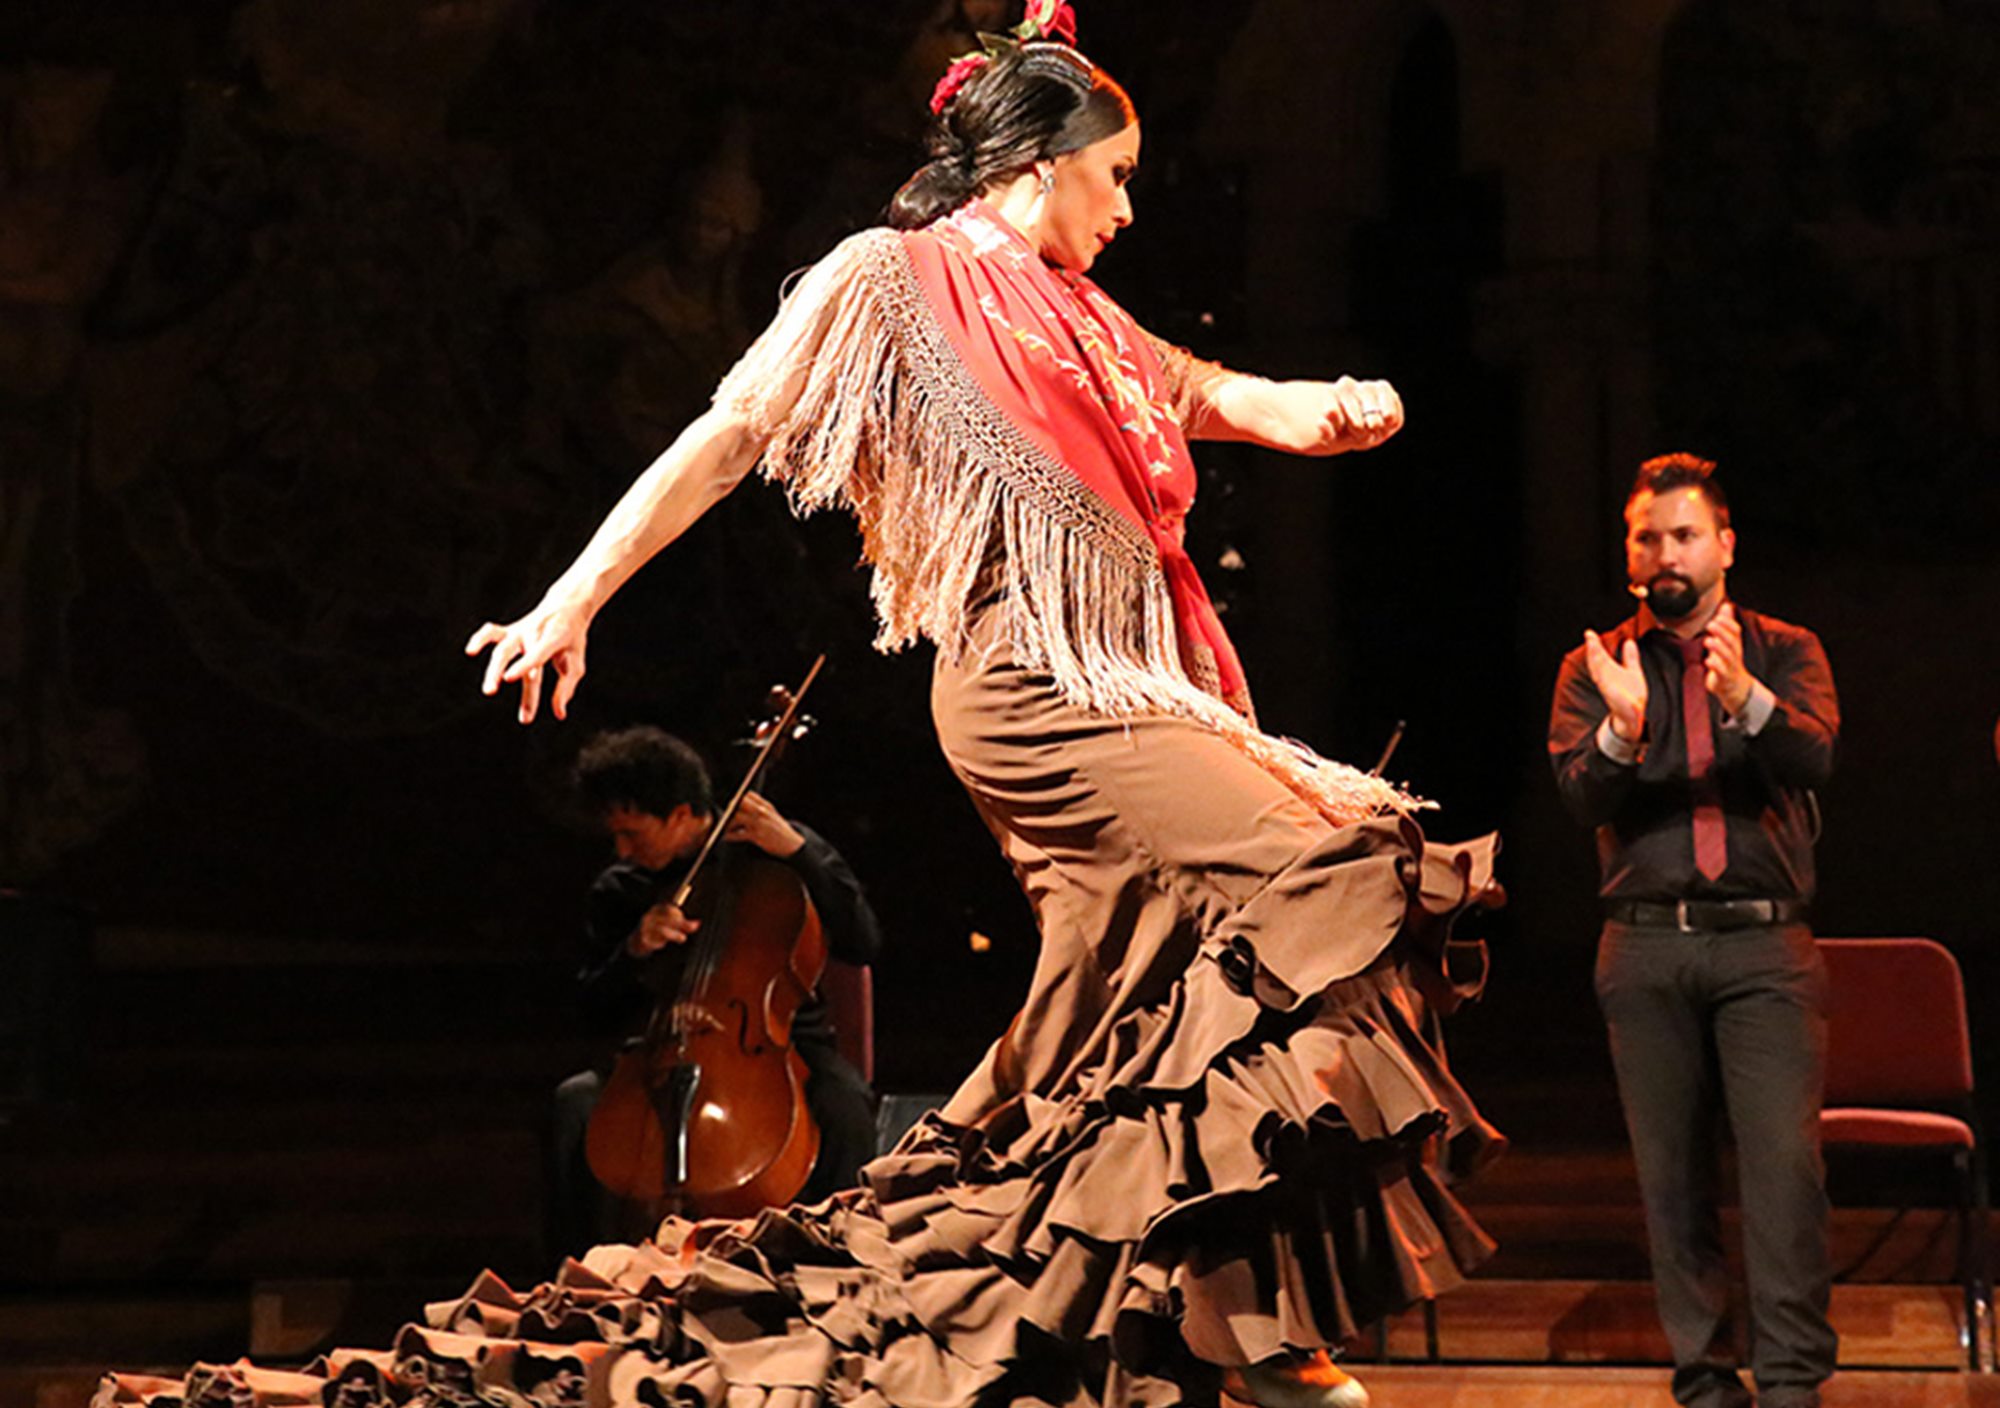 Espectáculo Ópera y Flamenco en el Palau de la Música Catalana de barcelona